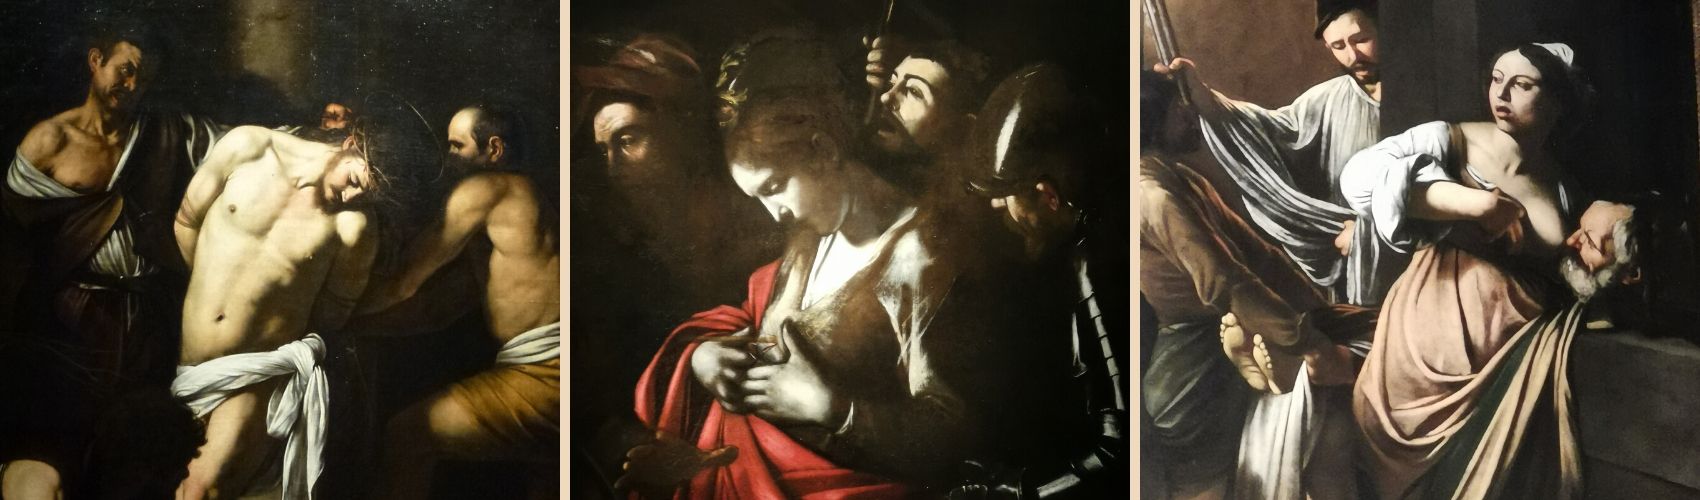 Opere di Caravaggio a Napoli - slide